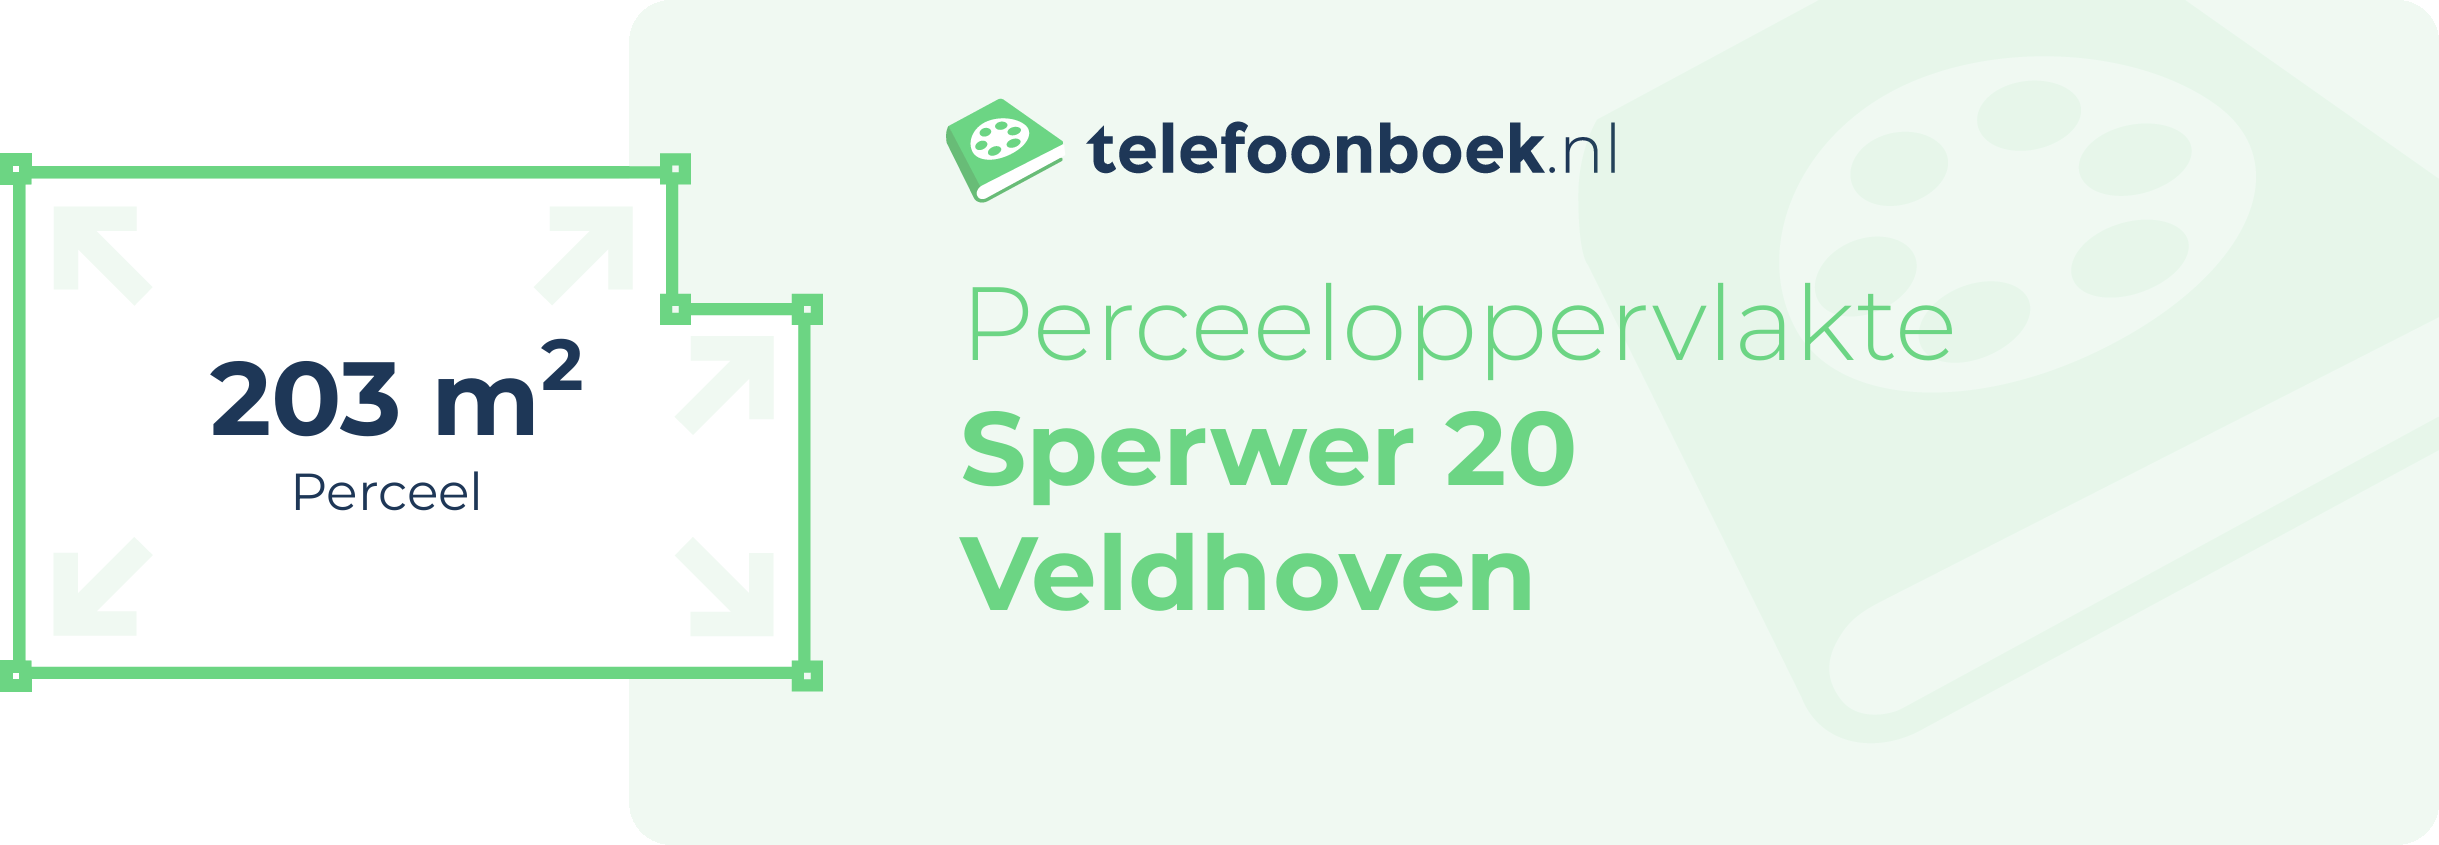 Perceeloppervlakte Sperwer 20 Veldhoven